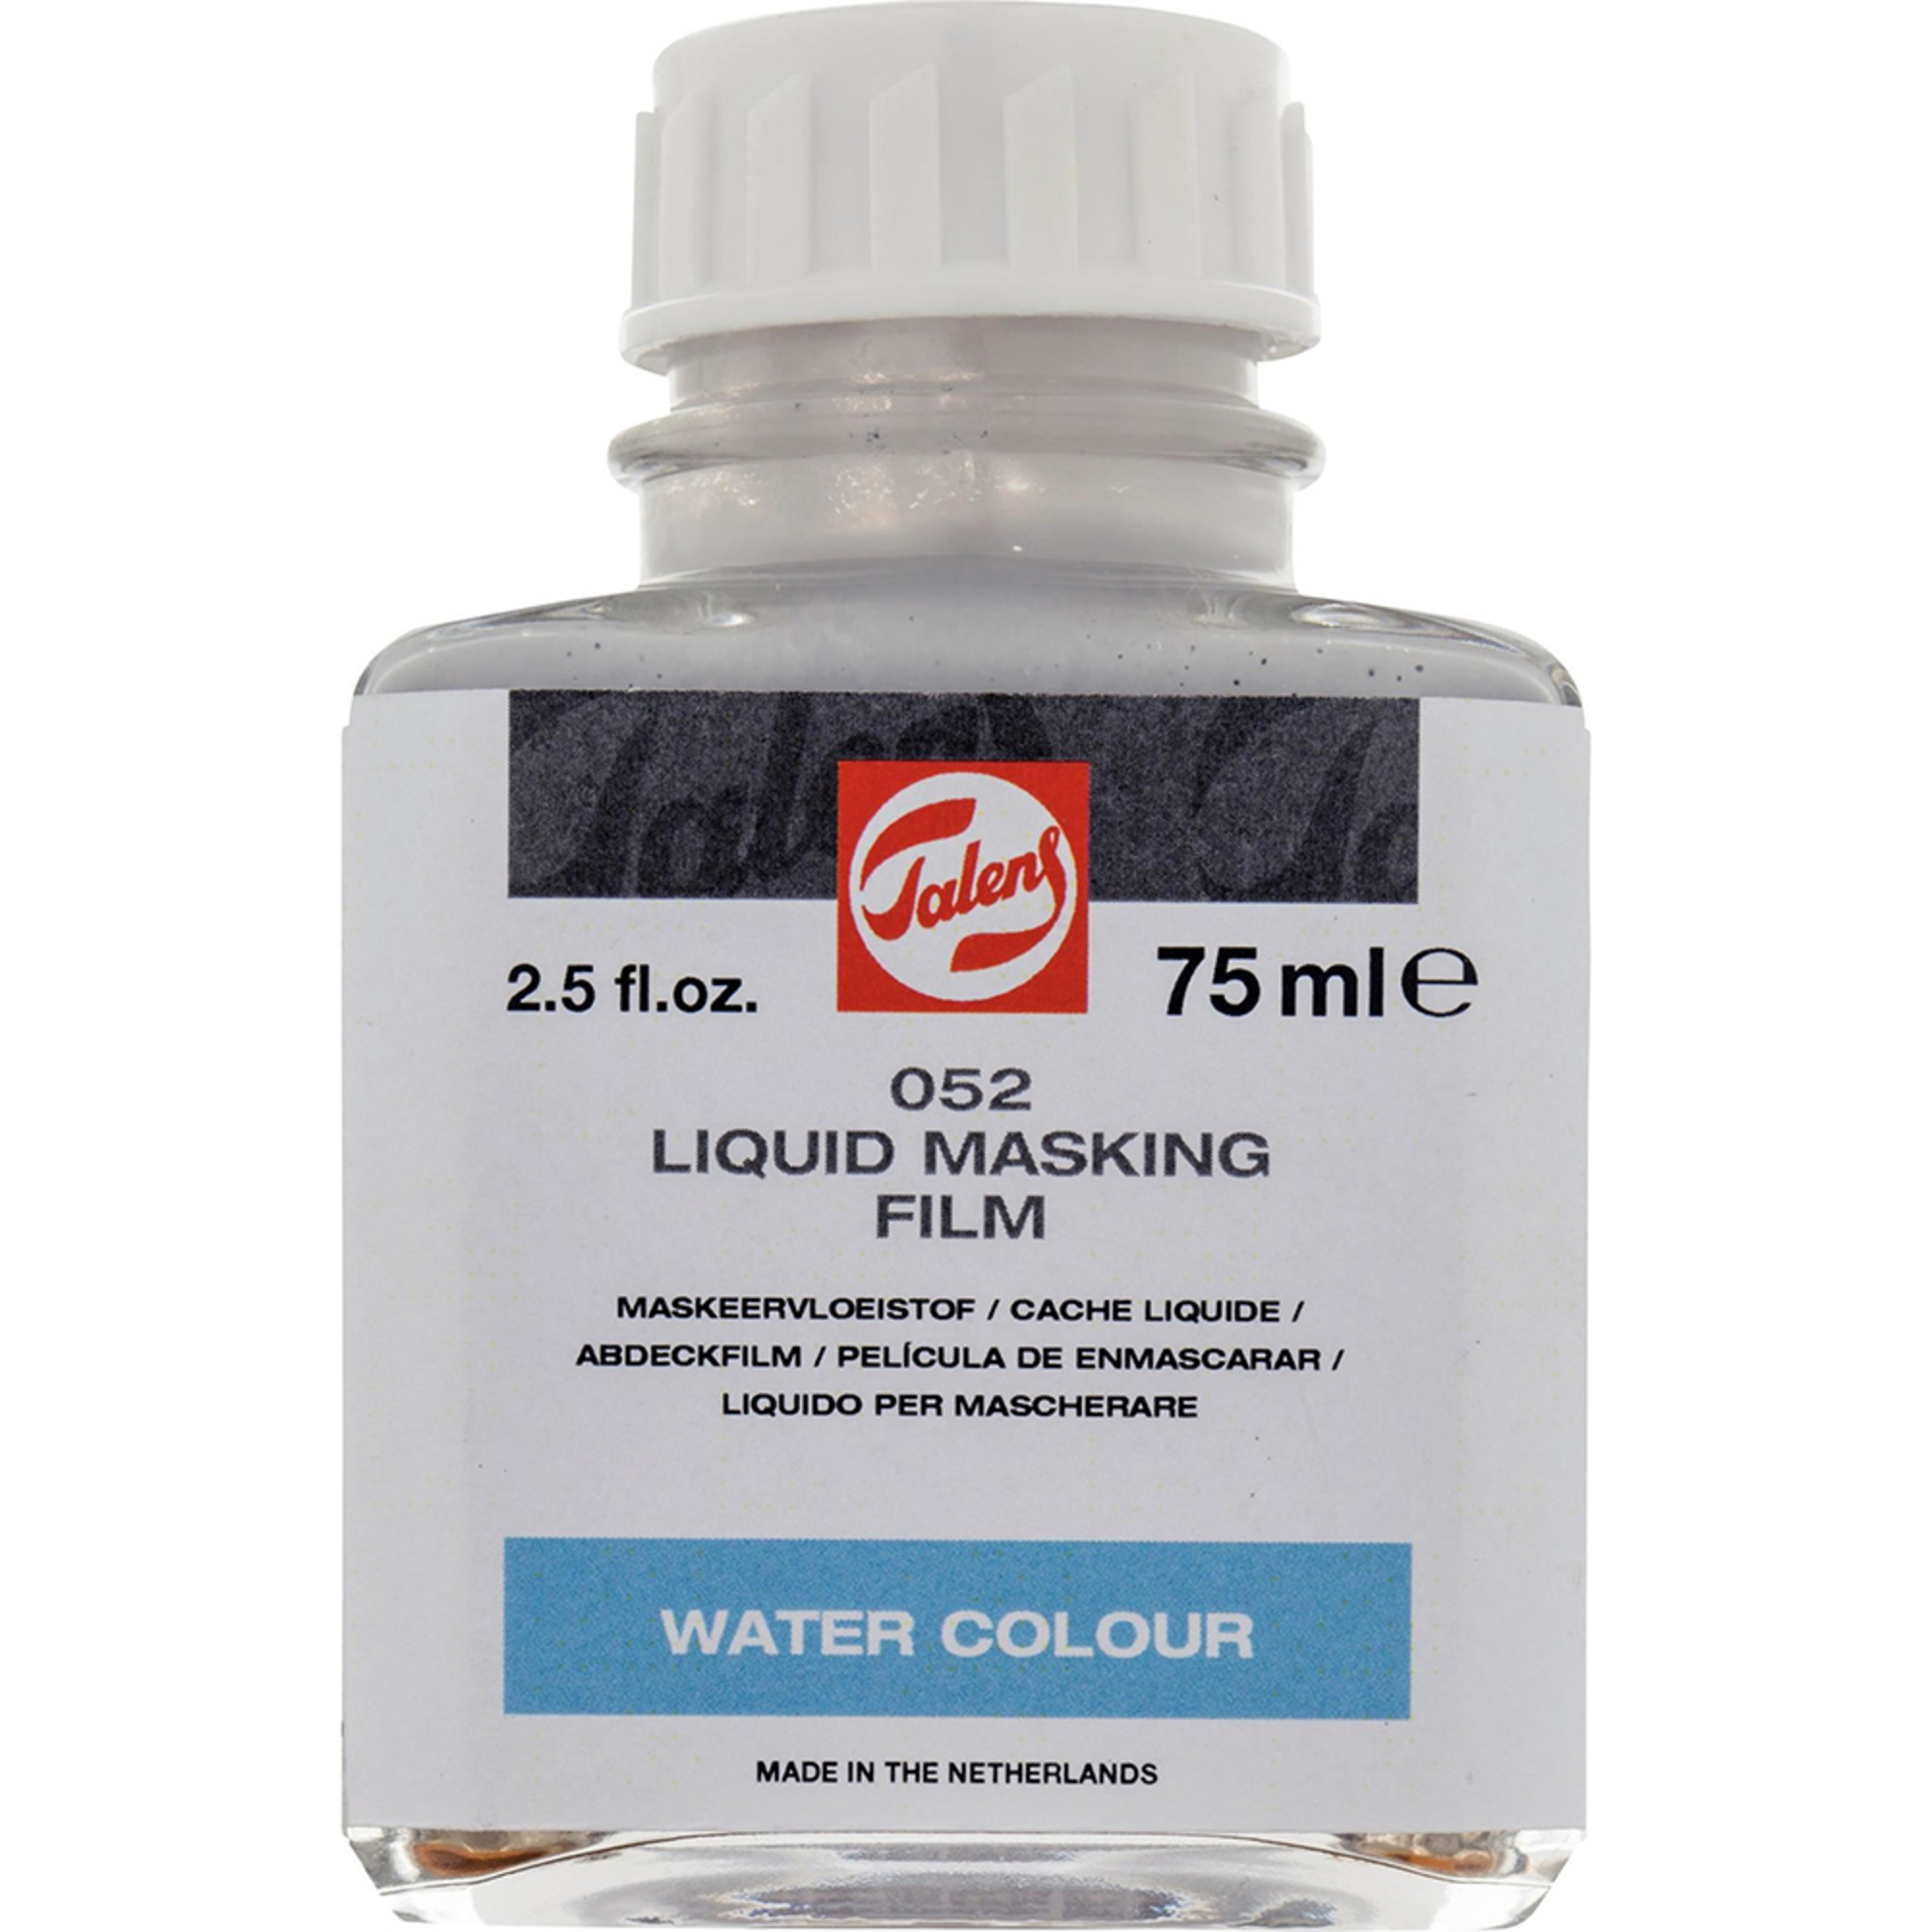 Liquido de Mascarar, 75 ml